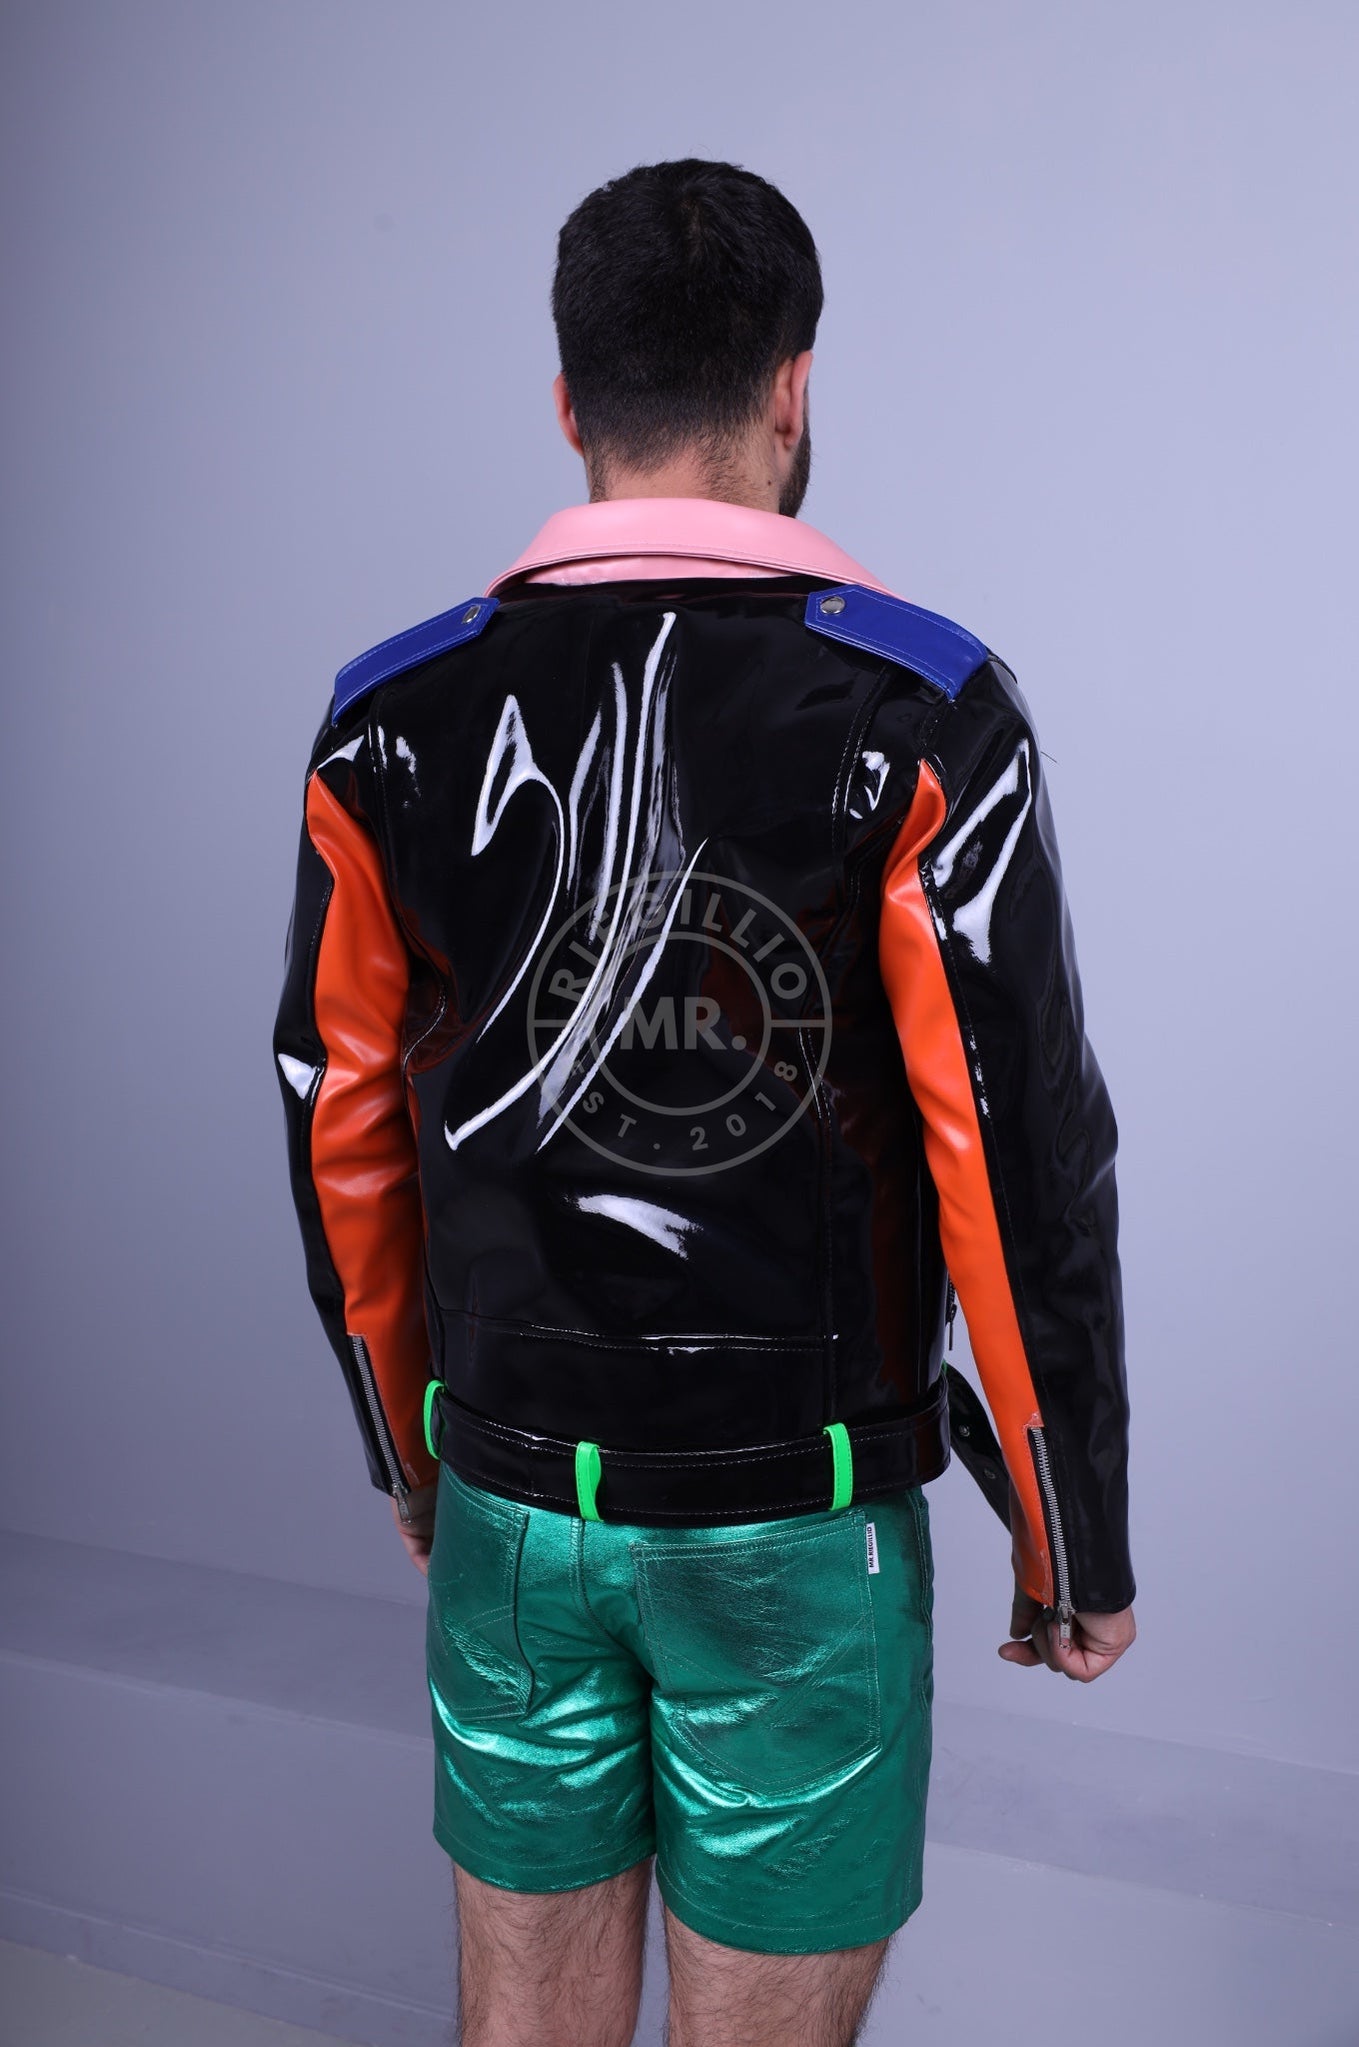 Colored PVC Brando Jacket at MR. Riegillio